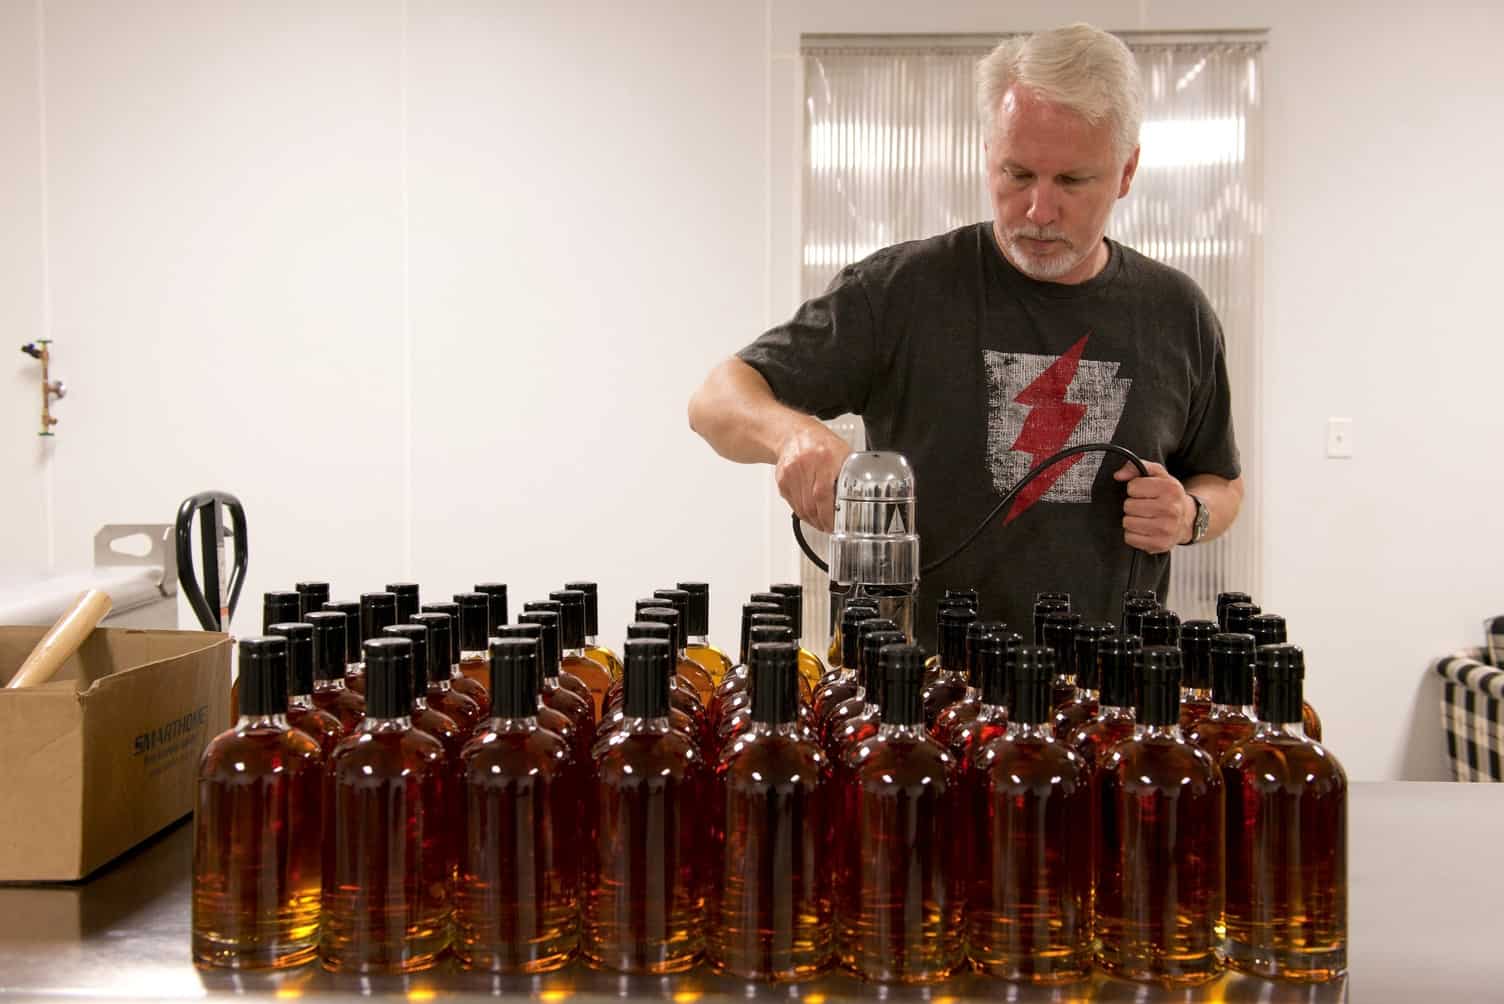 man filling liquor bottles in a distillery